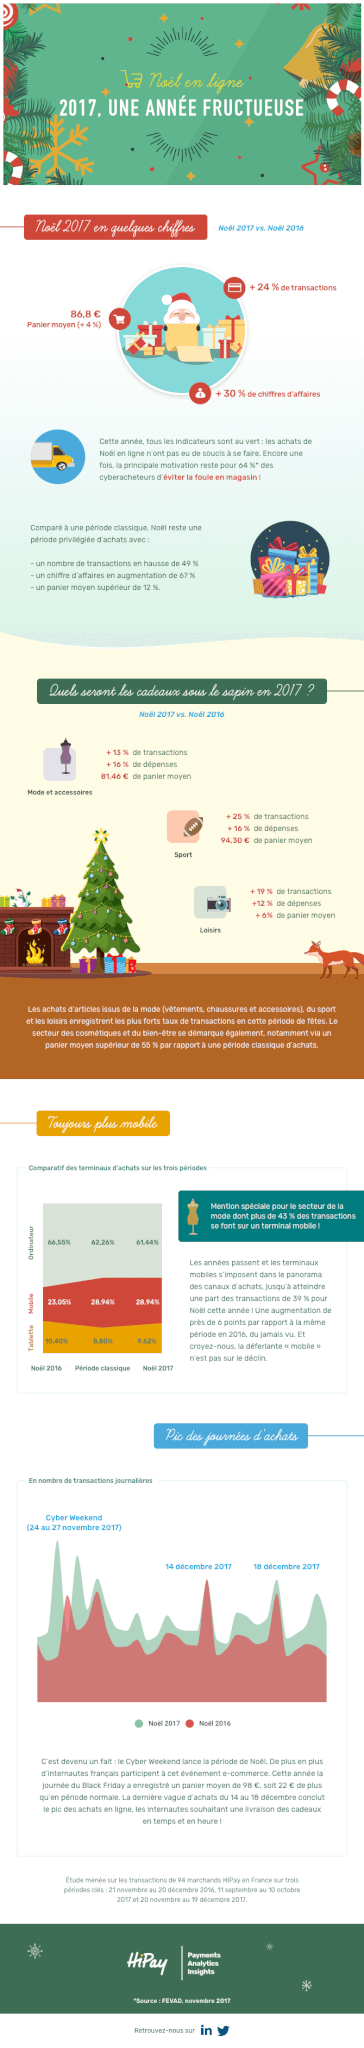 [Infographie] Bilan de Noël 2017 dans l’E-commerce